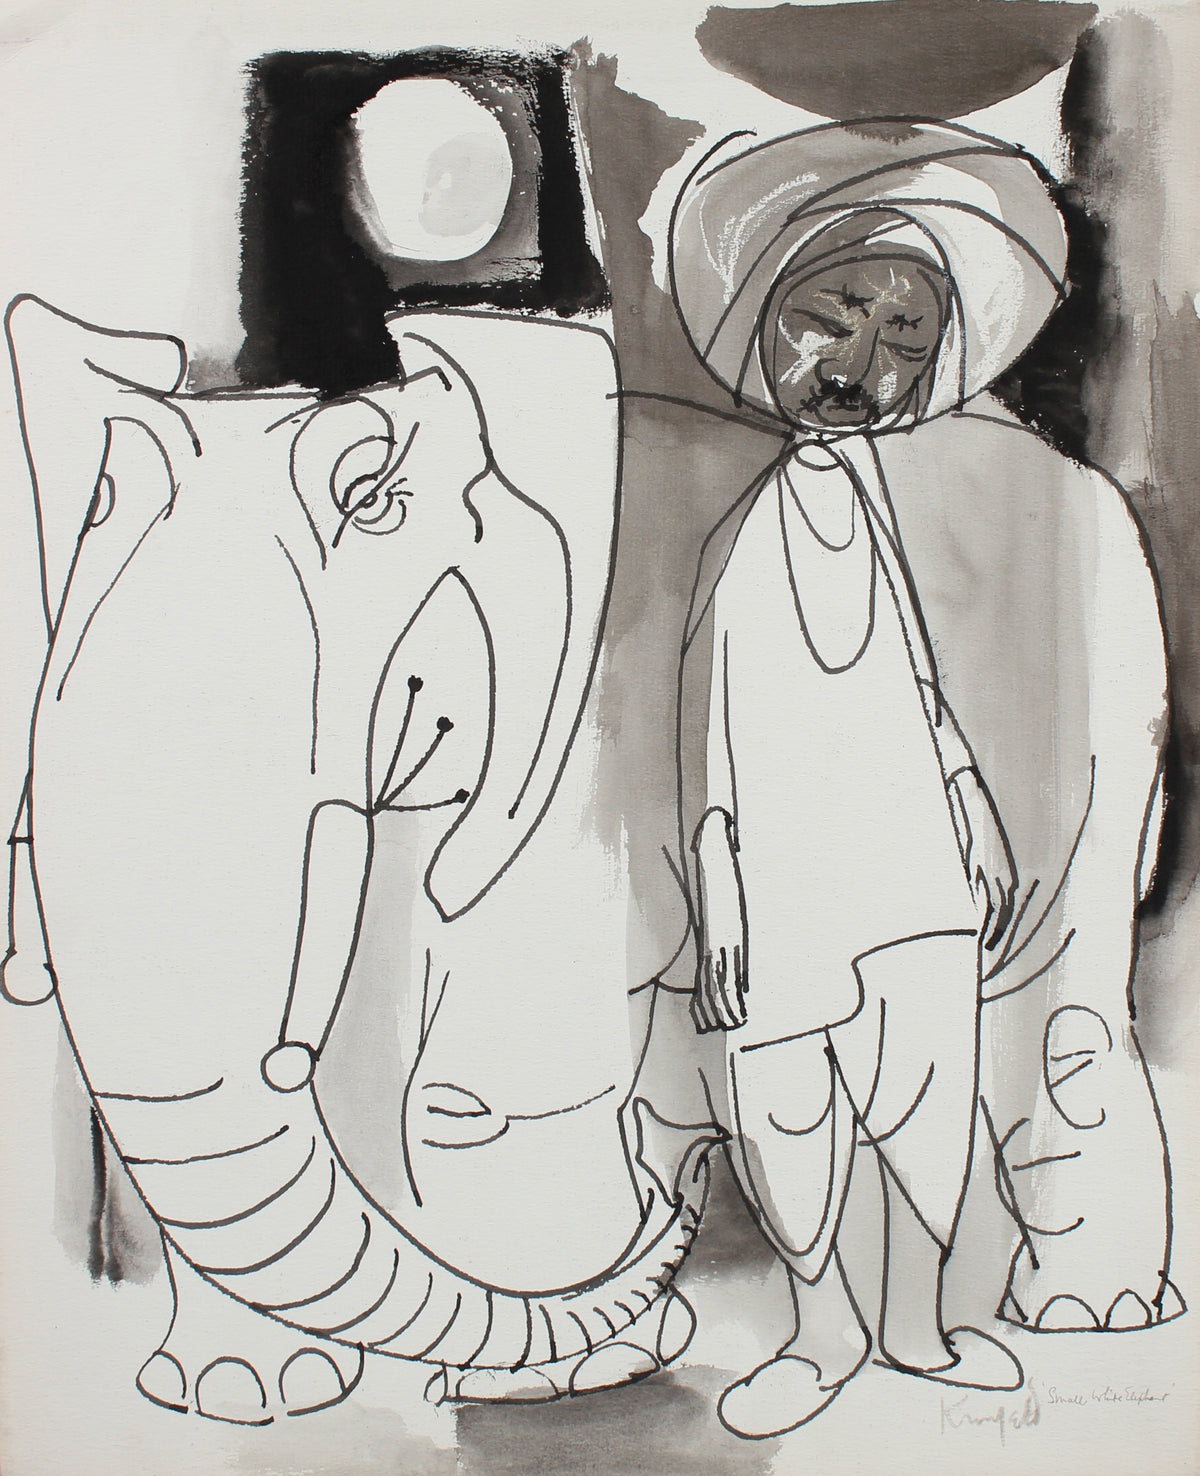 &lt;i&gt;Small White Elephant&lt;/i&gt; &lt;br&gt;1960-80s Oil Pastel &amp; Ink &lt;br&gt;&lt;br&gt;#99493